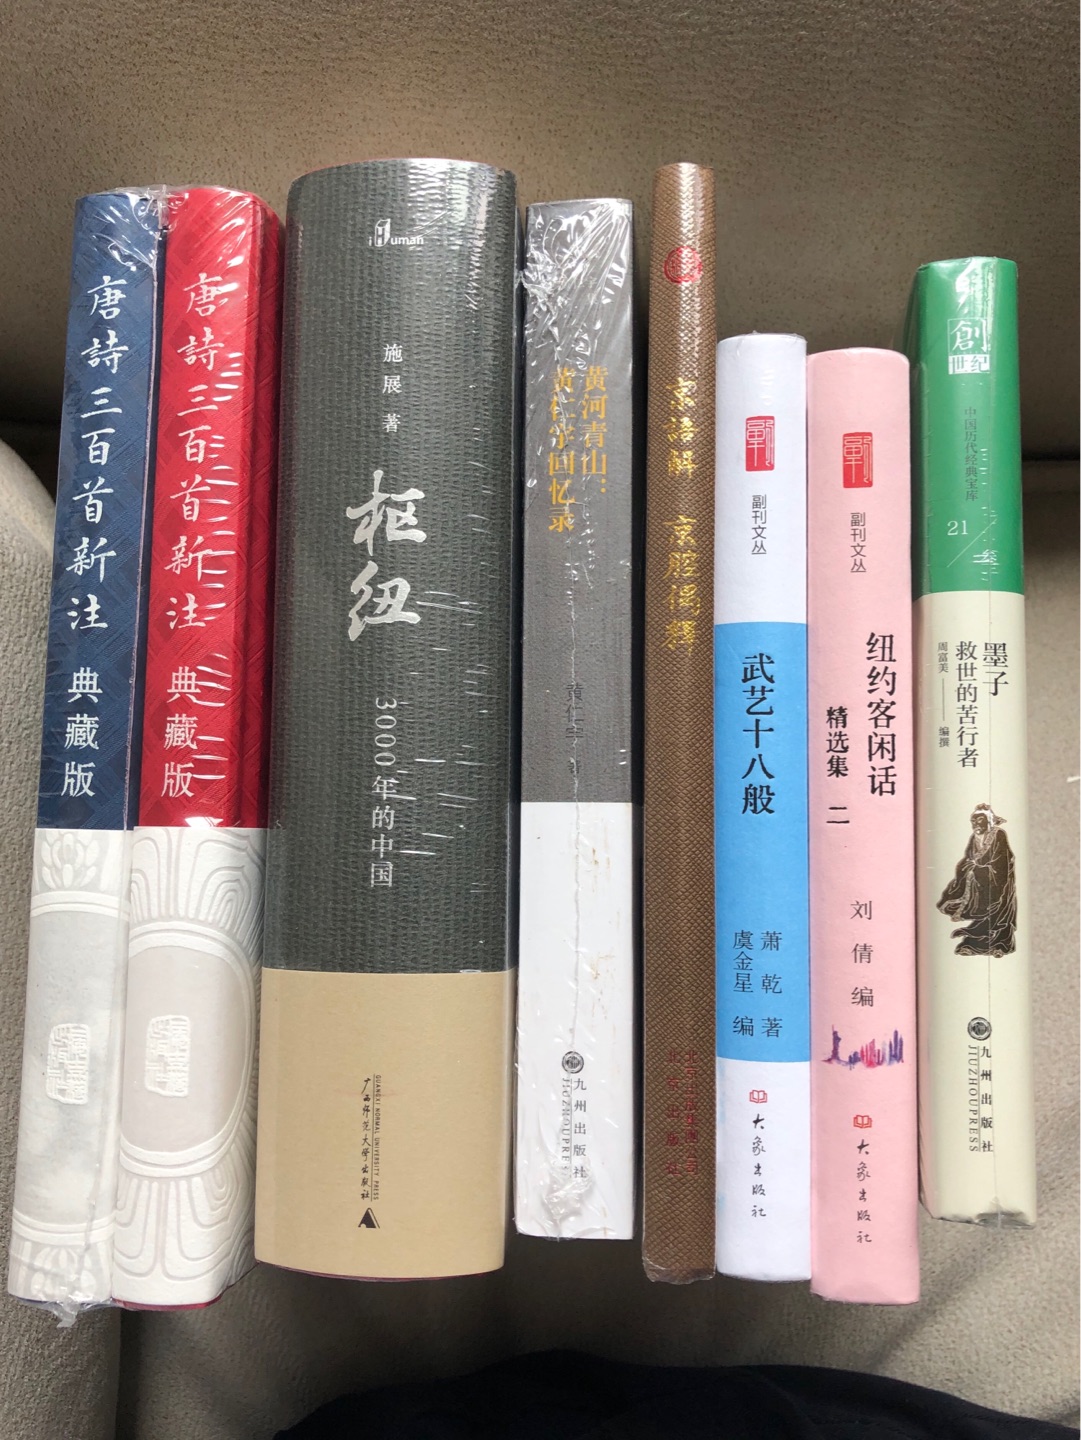 大象出版社出品，李辉主编的副刊文丛，陆陆续续收了不少本了。